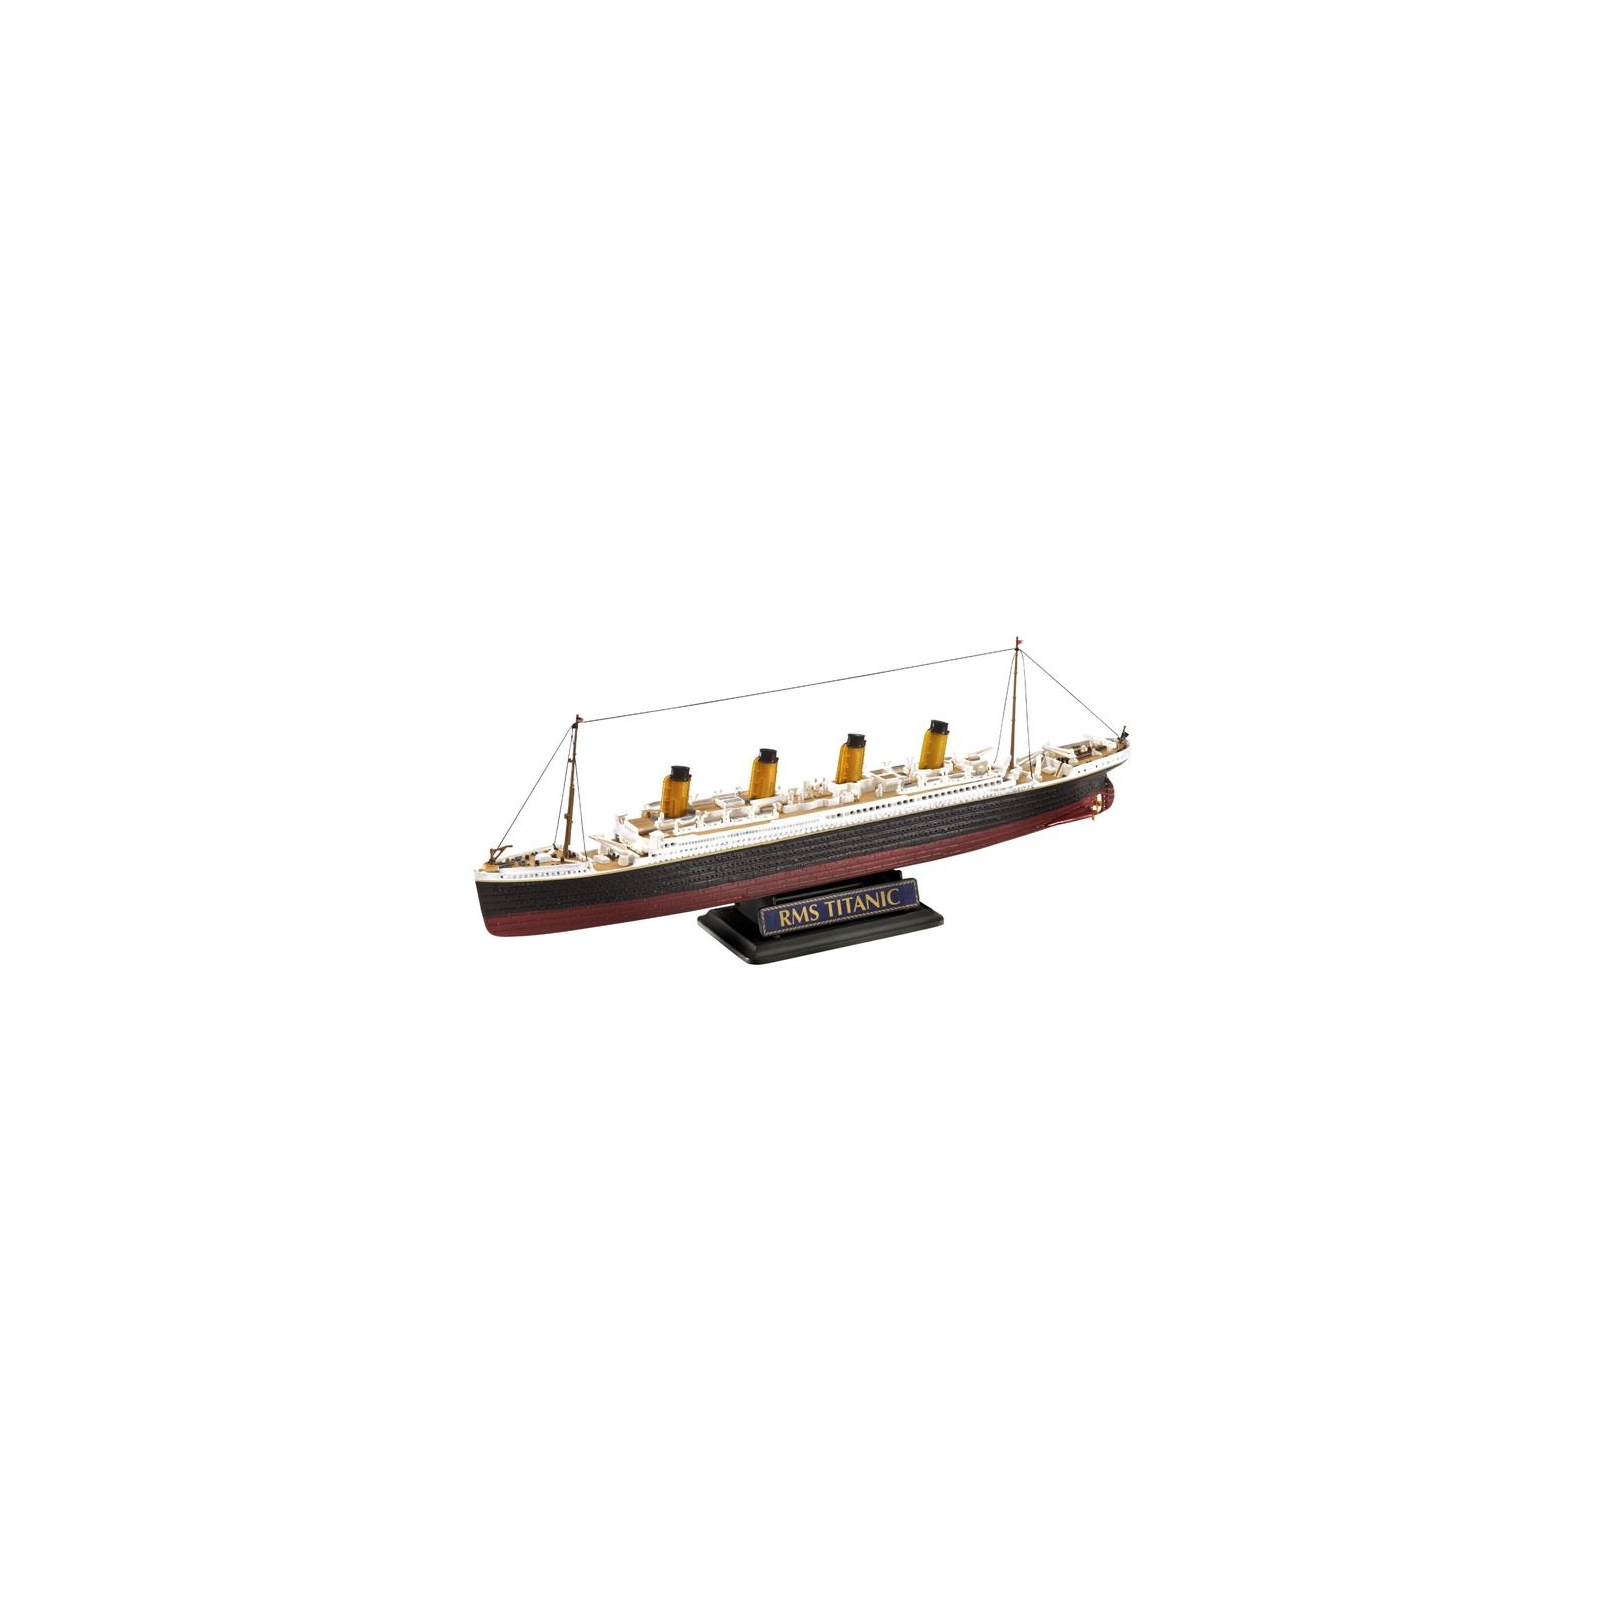 Сборная модель Revell Корабль Титаник подарочный набор уровень 4 1:700 и 1:1200 уровень 4 1:700 и 1:1200 (RVL-05727) изображение 3